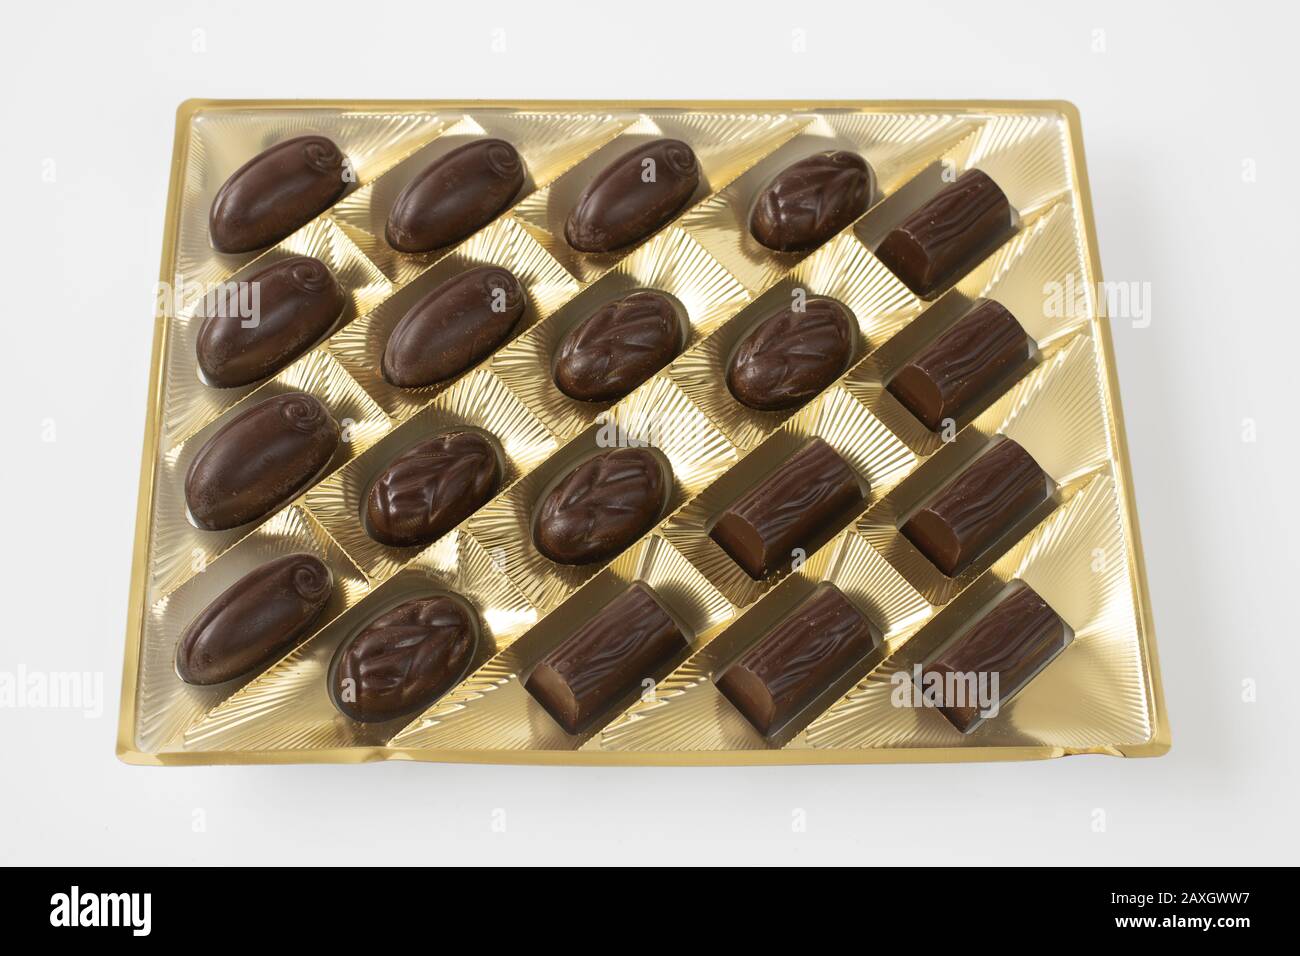 caramelle al cioccolato fondente confezionate su sfondo chiaro Foto Stock